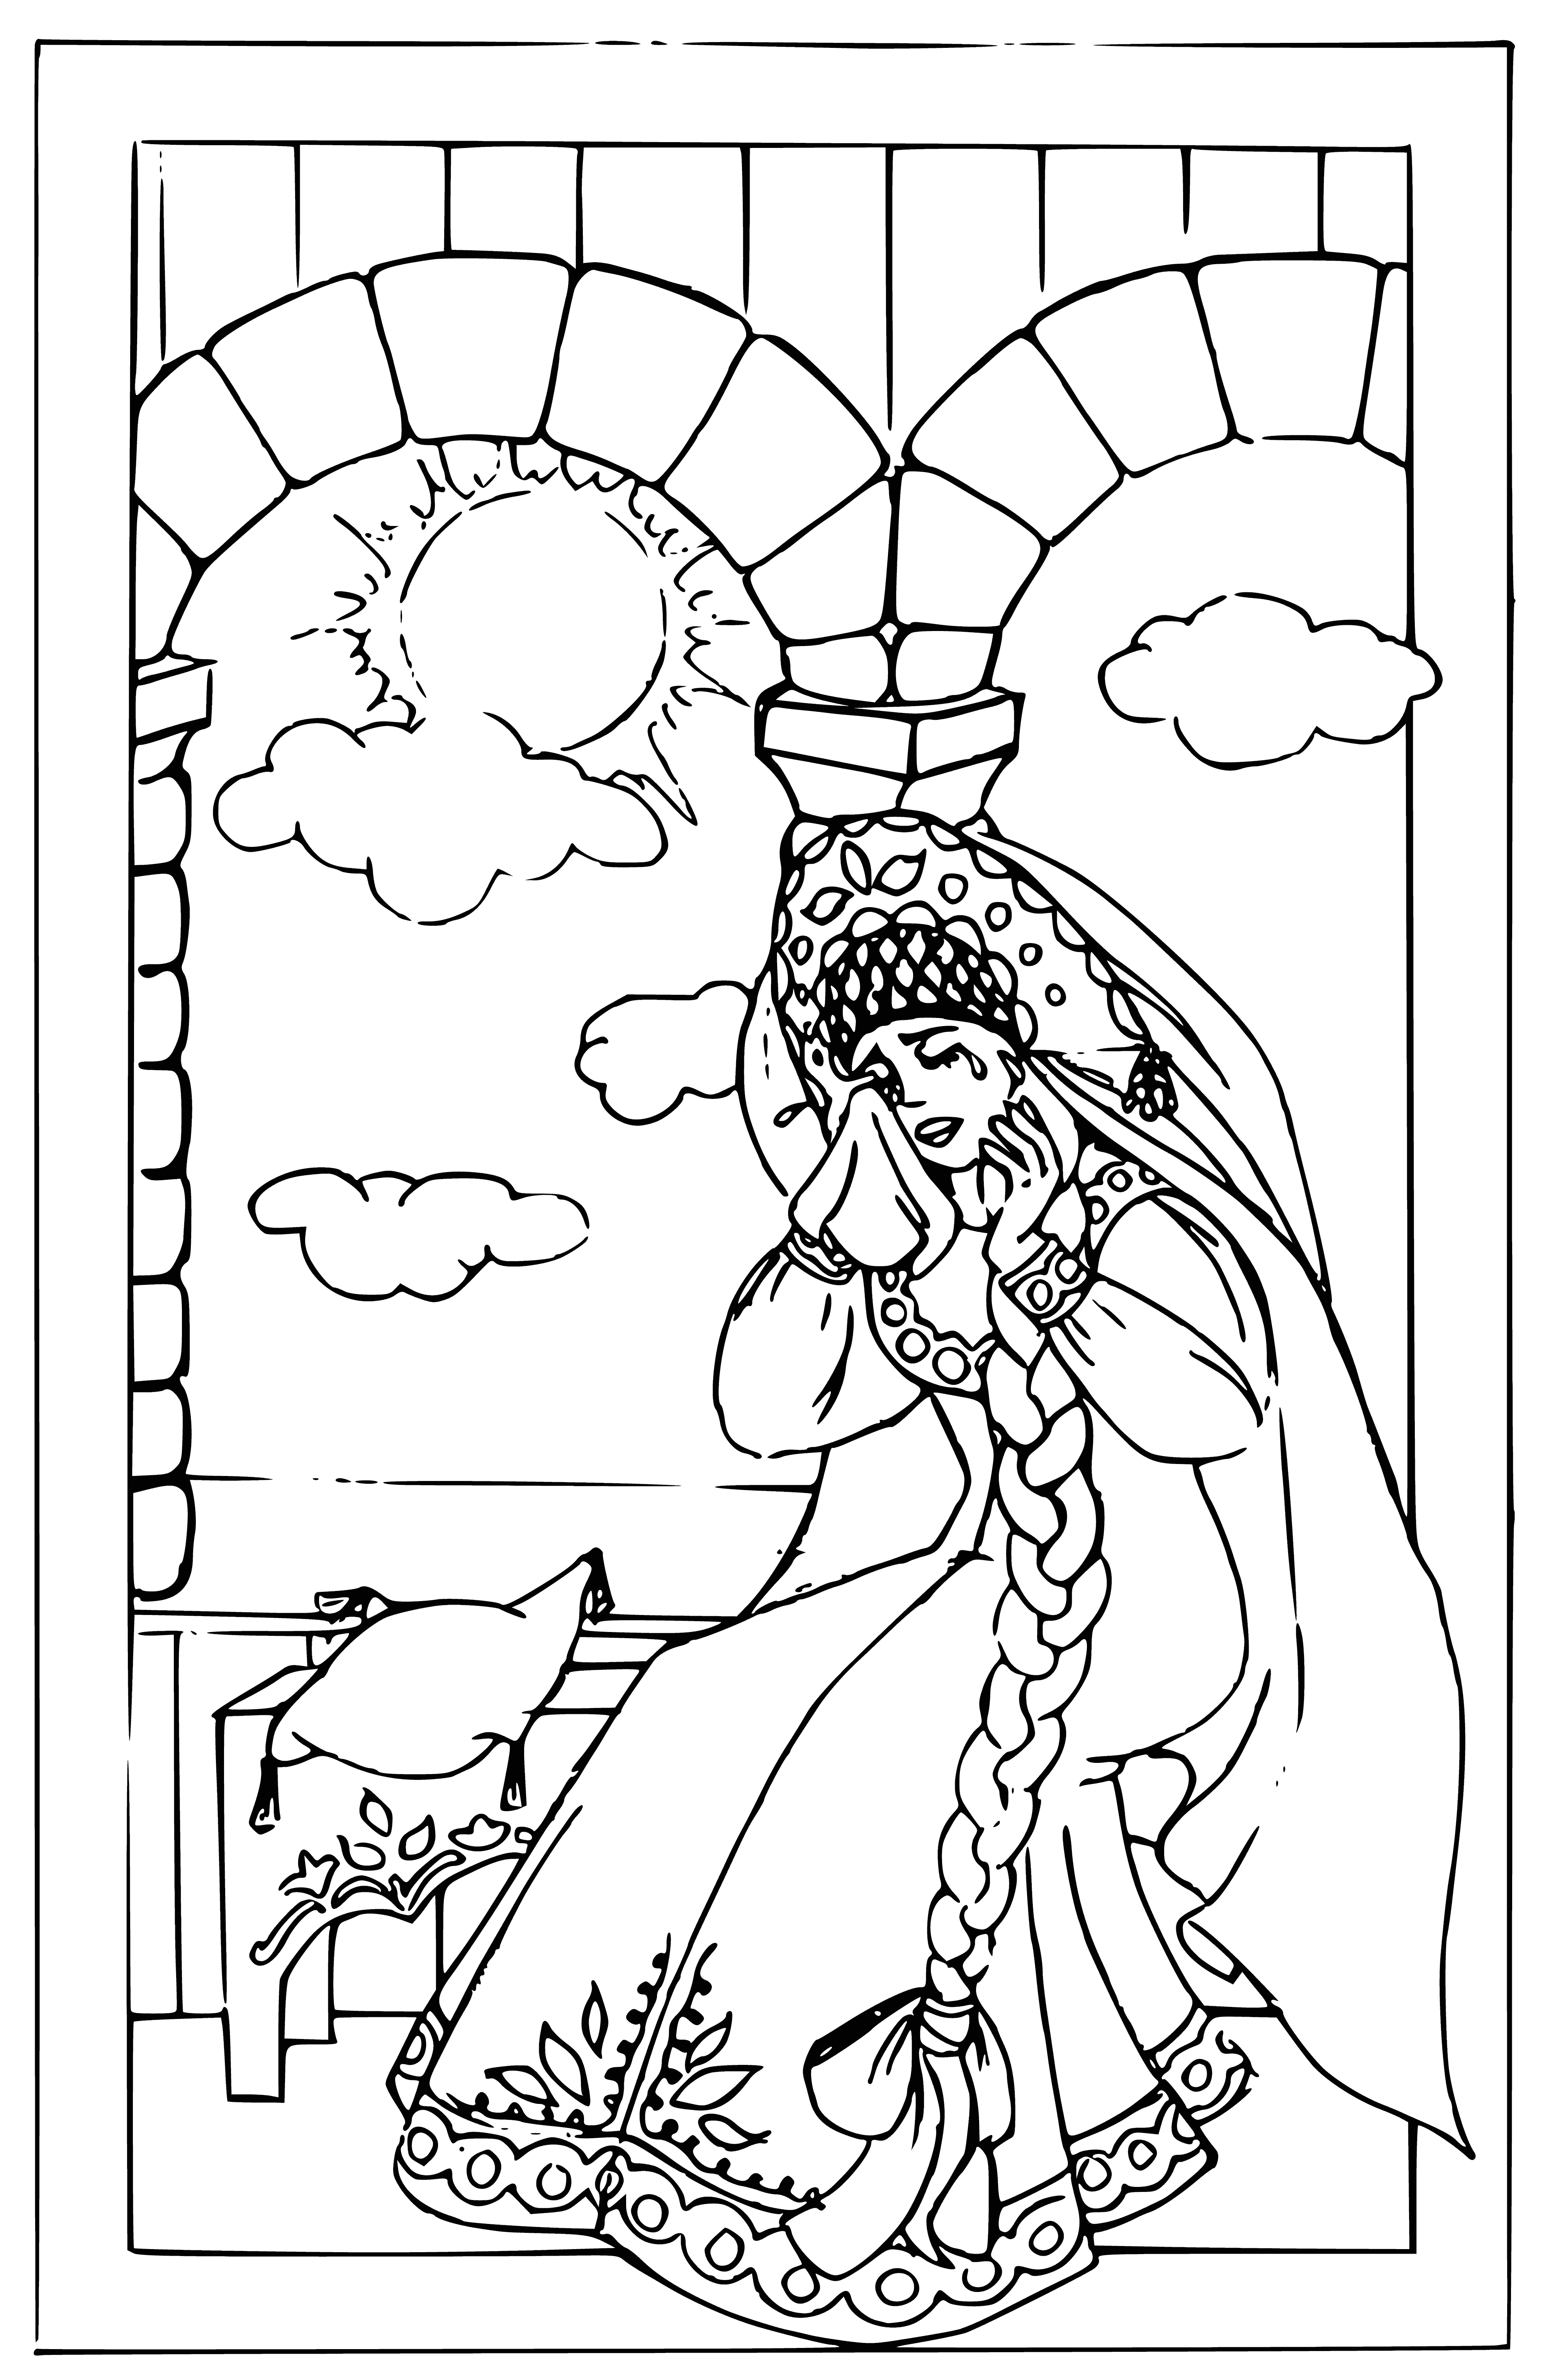 Princess Nesmeyana coloring page